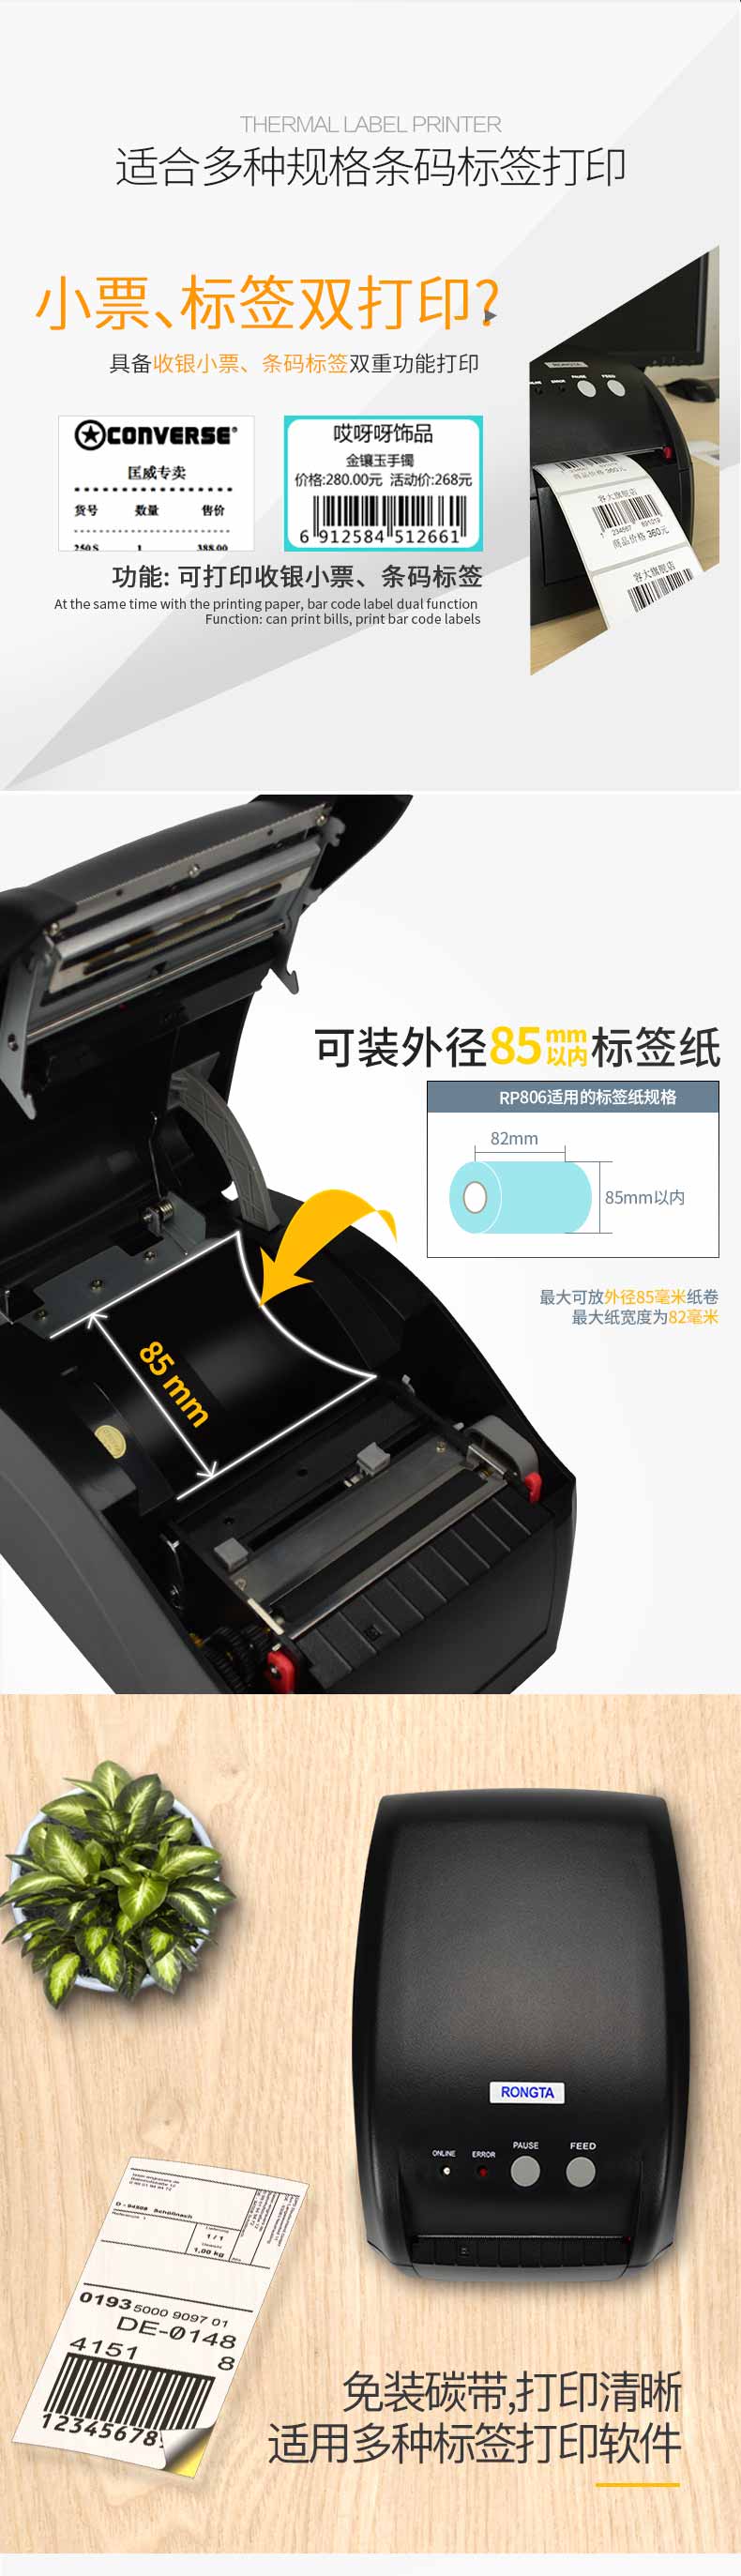 容大RP80VI 热敏标签打印机  第2张